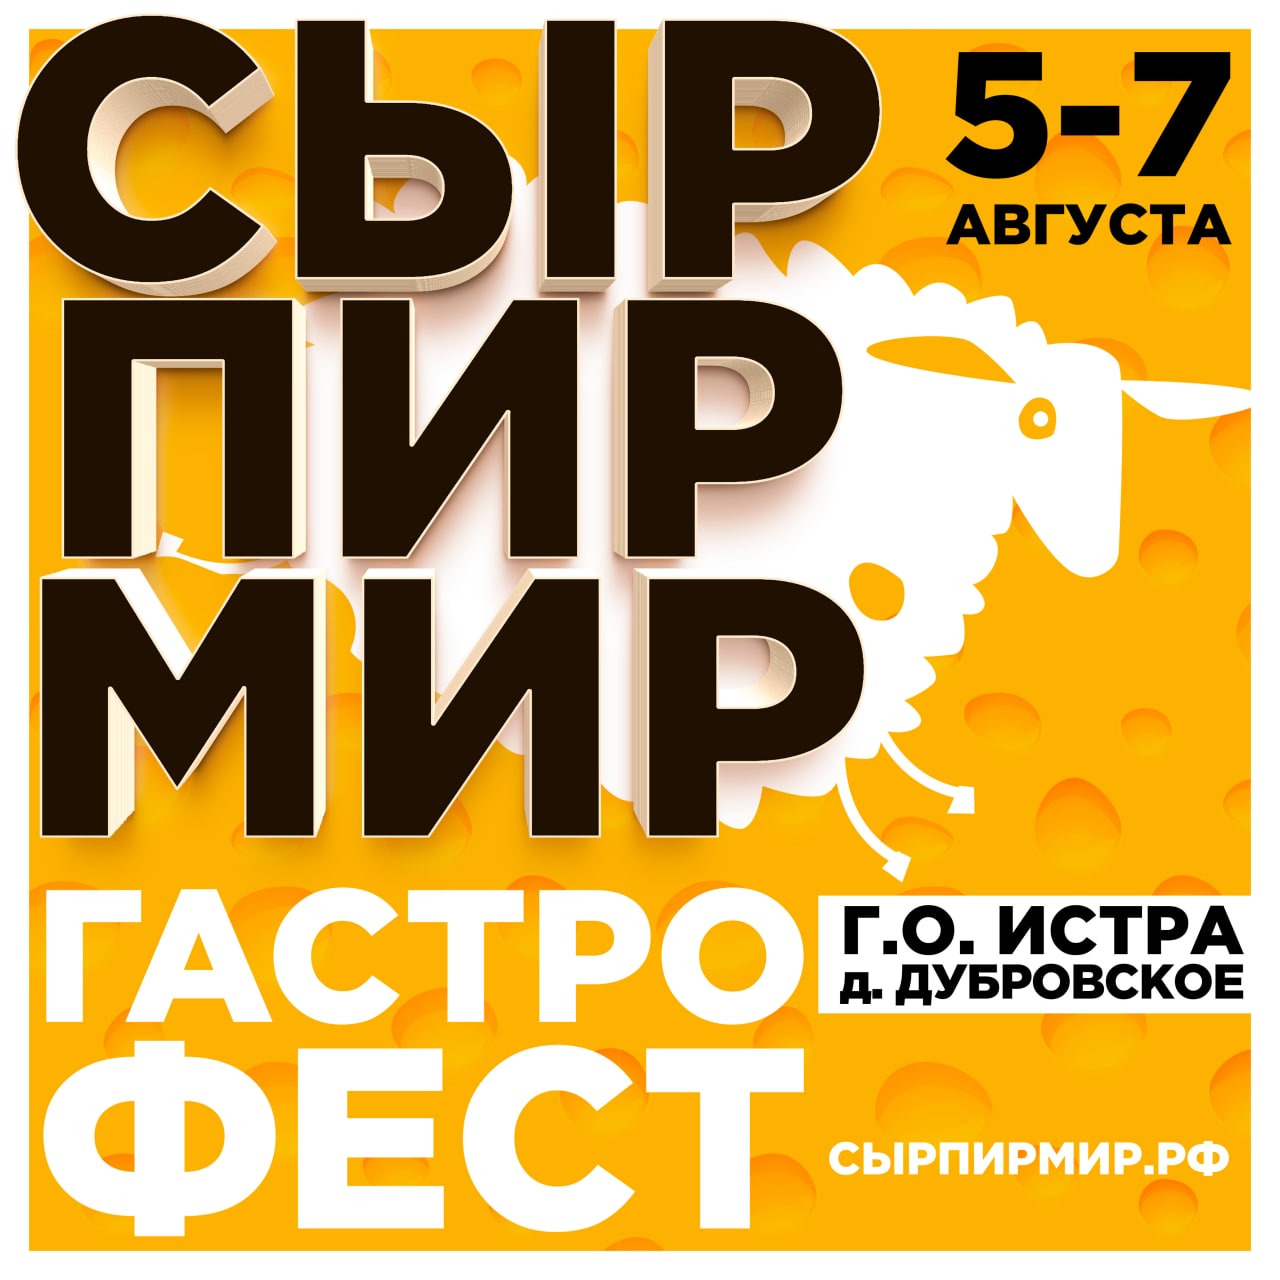 Всероссийский фестиваль "Сыр. Пир.Мир." - 2022